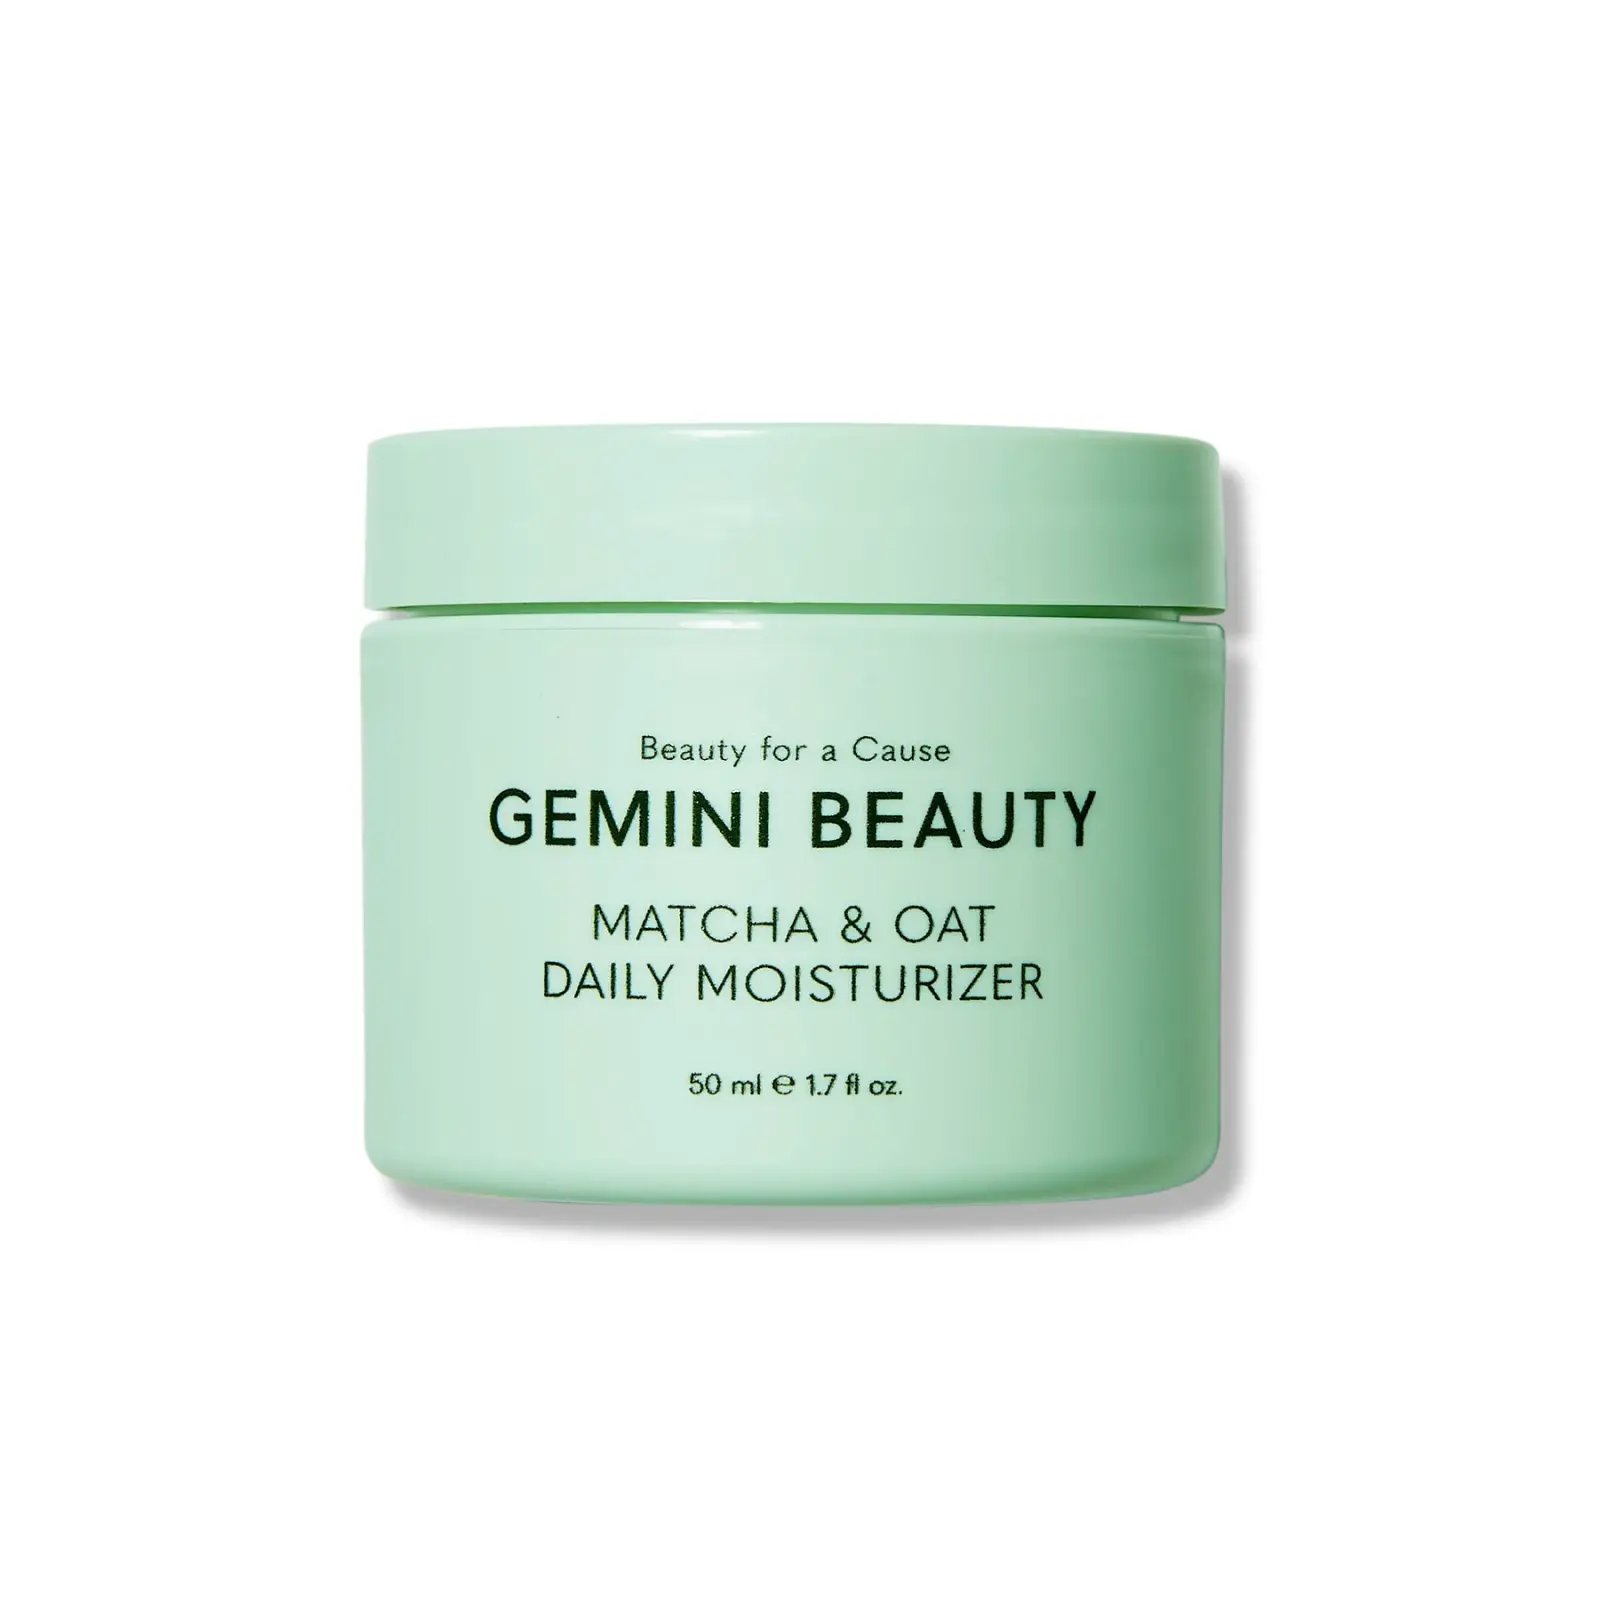 Gemini Beauty – Matcha & Oat Daily Moisturizer